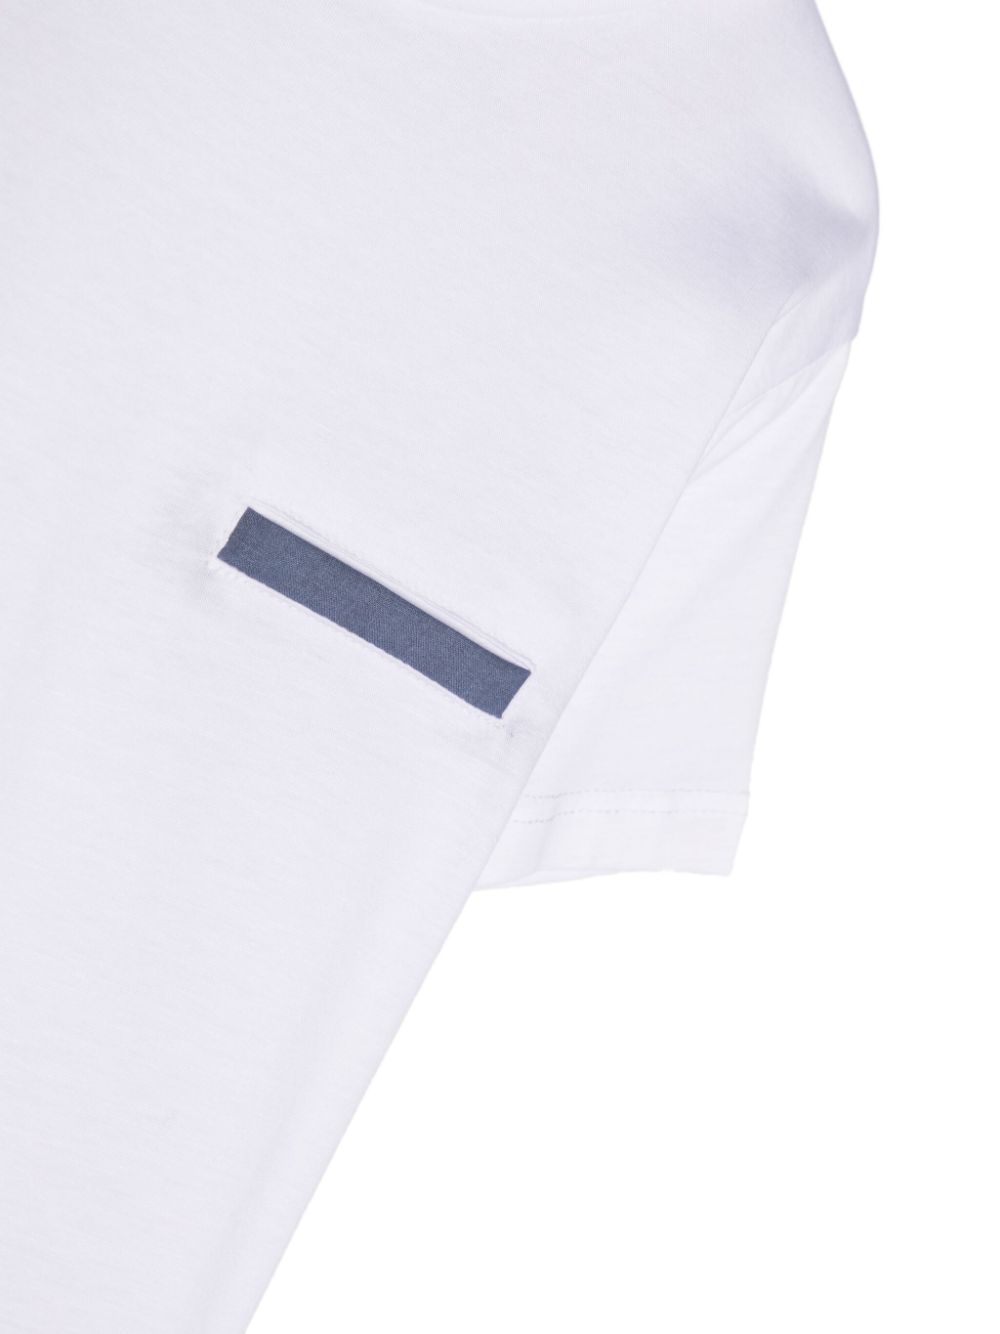 White t-shirt for boys